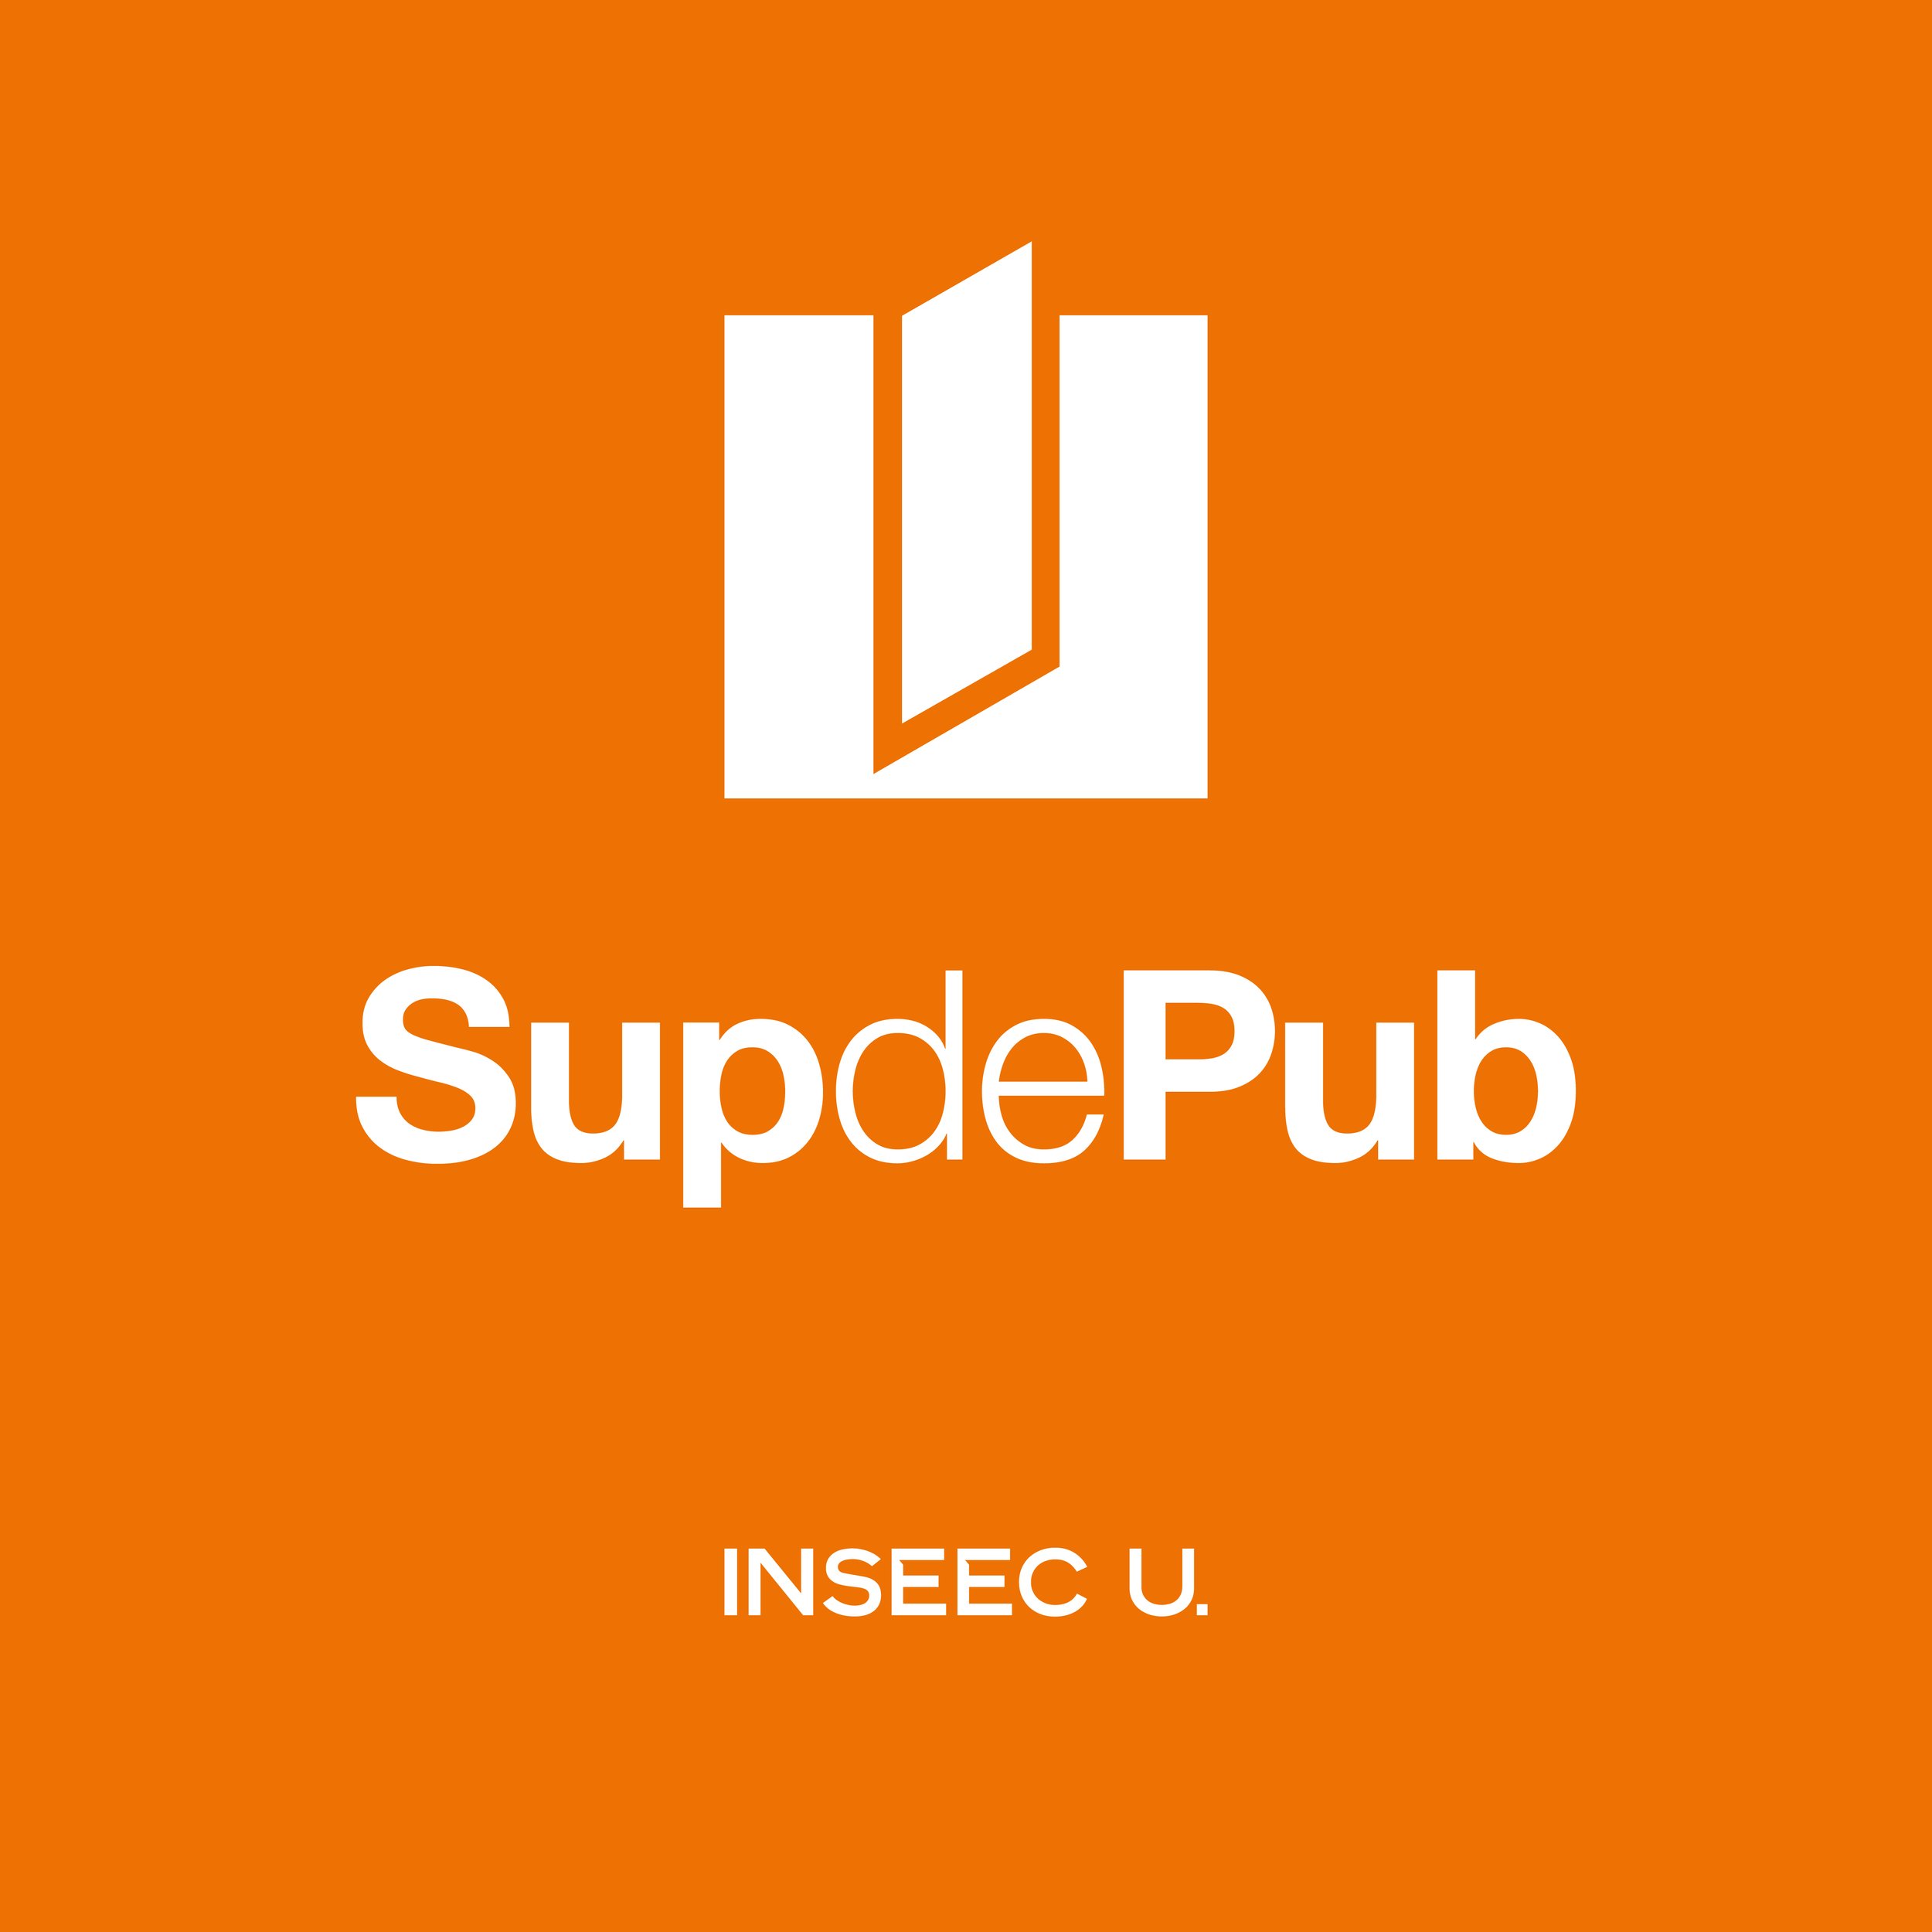 supdepub-logo-190213101451.jpg